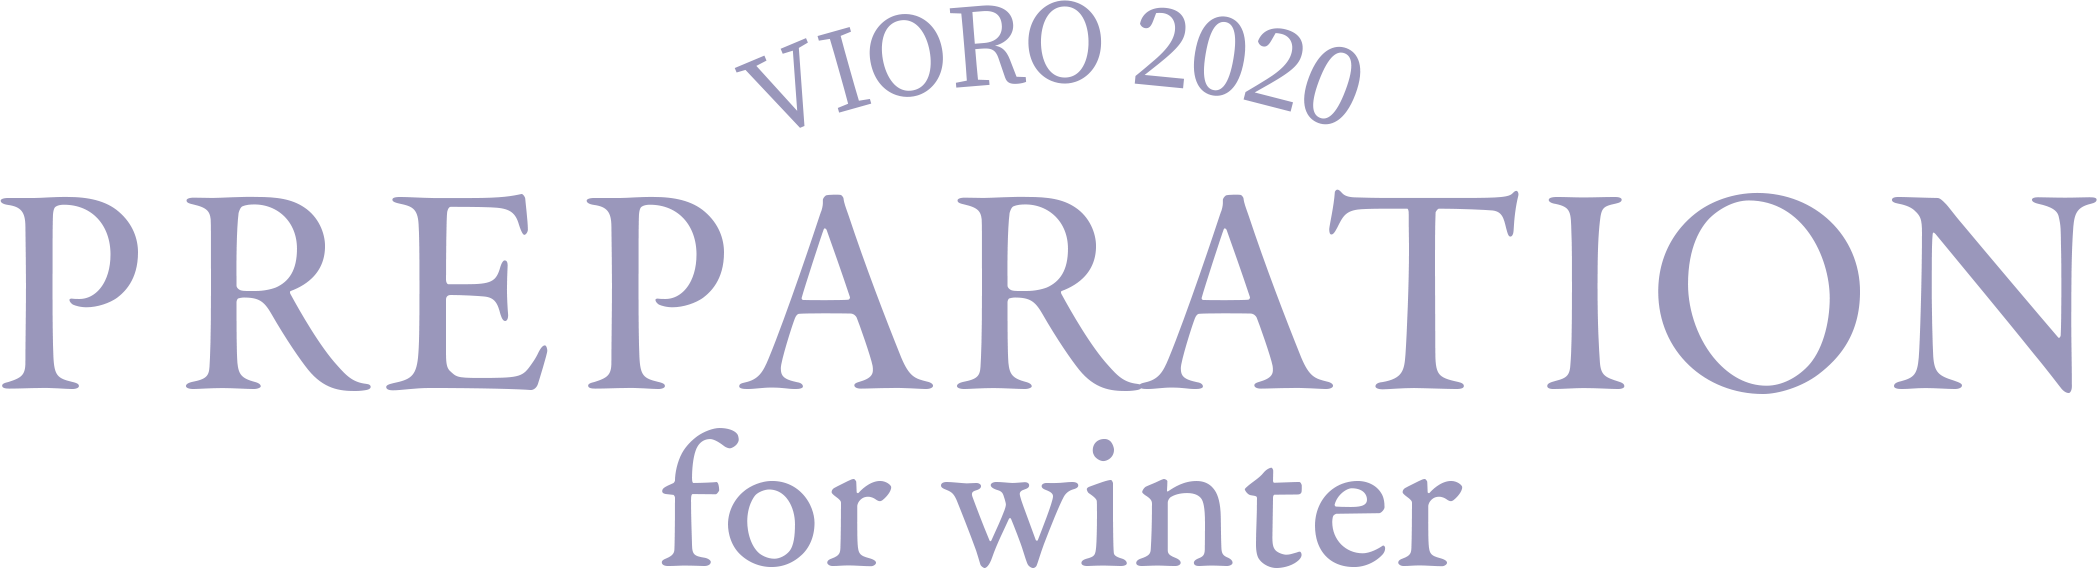 VIORO2020 PREPARATION for Winter